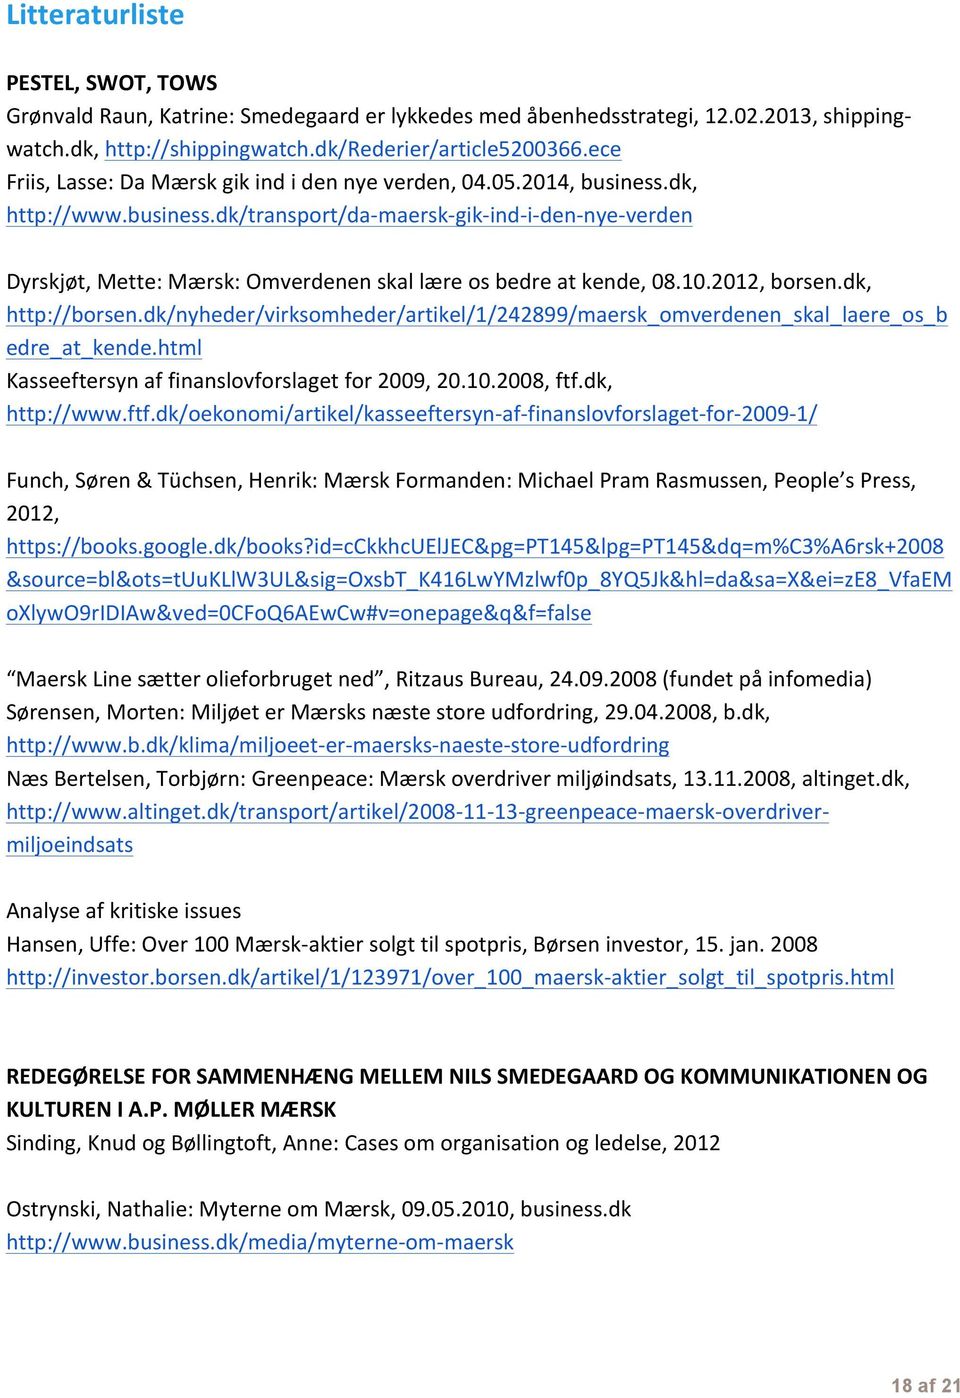 10.2012, borsen.dk, http://borsen.dk/nyheder/virksomheder/artikel/1/242899/maersk_omverdenen_skal_laere_os_b edre_at_kende.html Kasseeftersyn af finanslovforslaget for 2009, 20.10.2008, ftf.